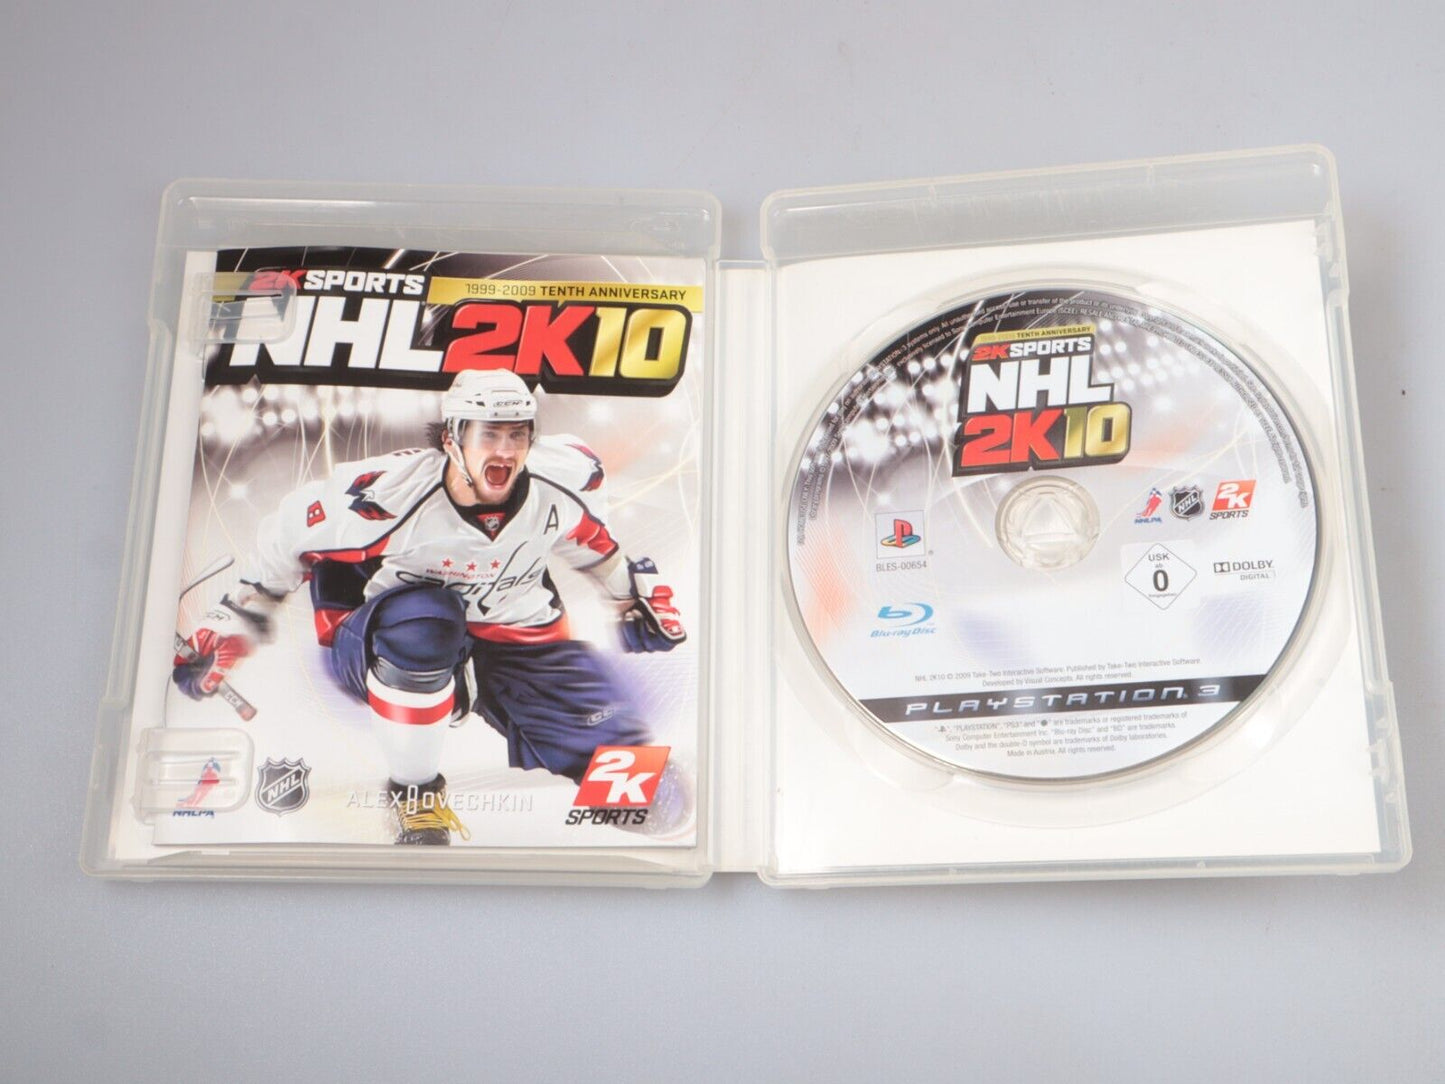 PS3 | 2KSports NHL2K10 tienjarig jubileum 